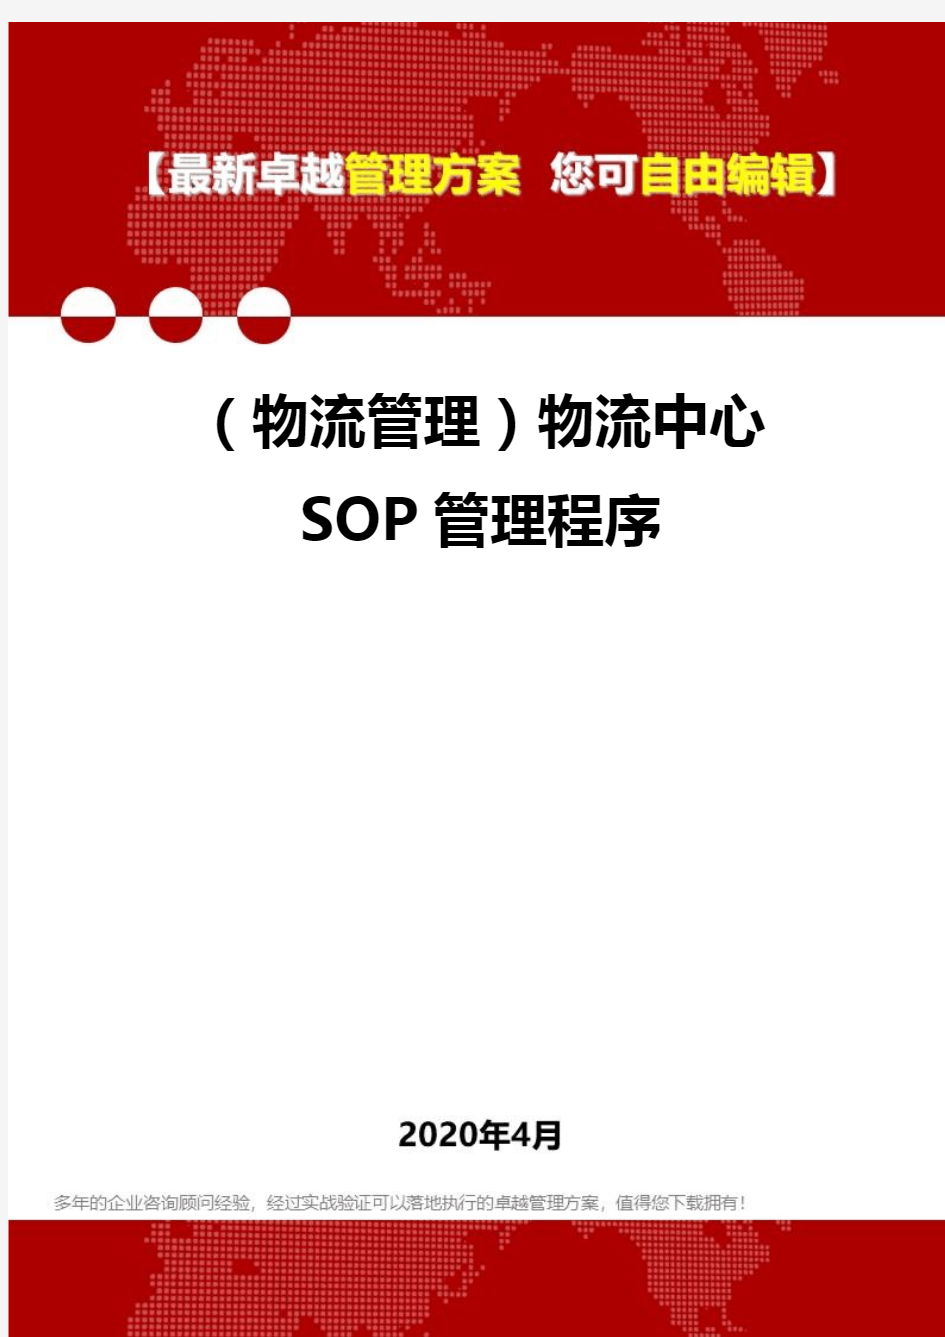 (物流管理)物流中心SOP管理程序